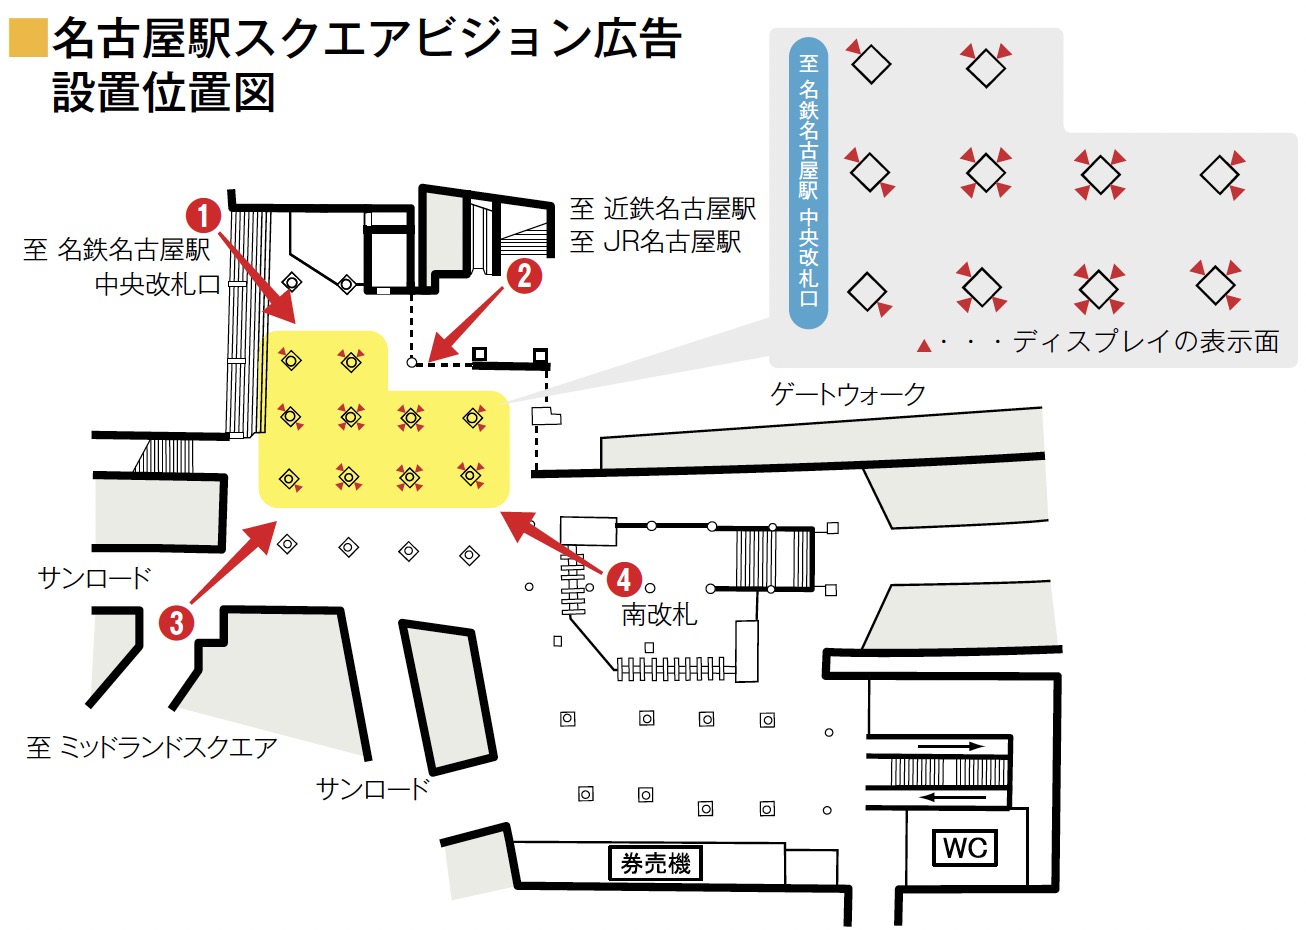 名古屋駅スクエアビジョン広告配置図